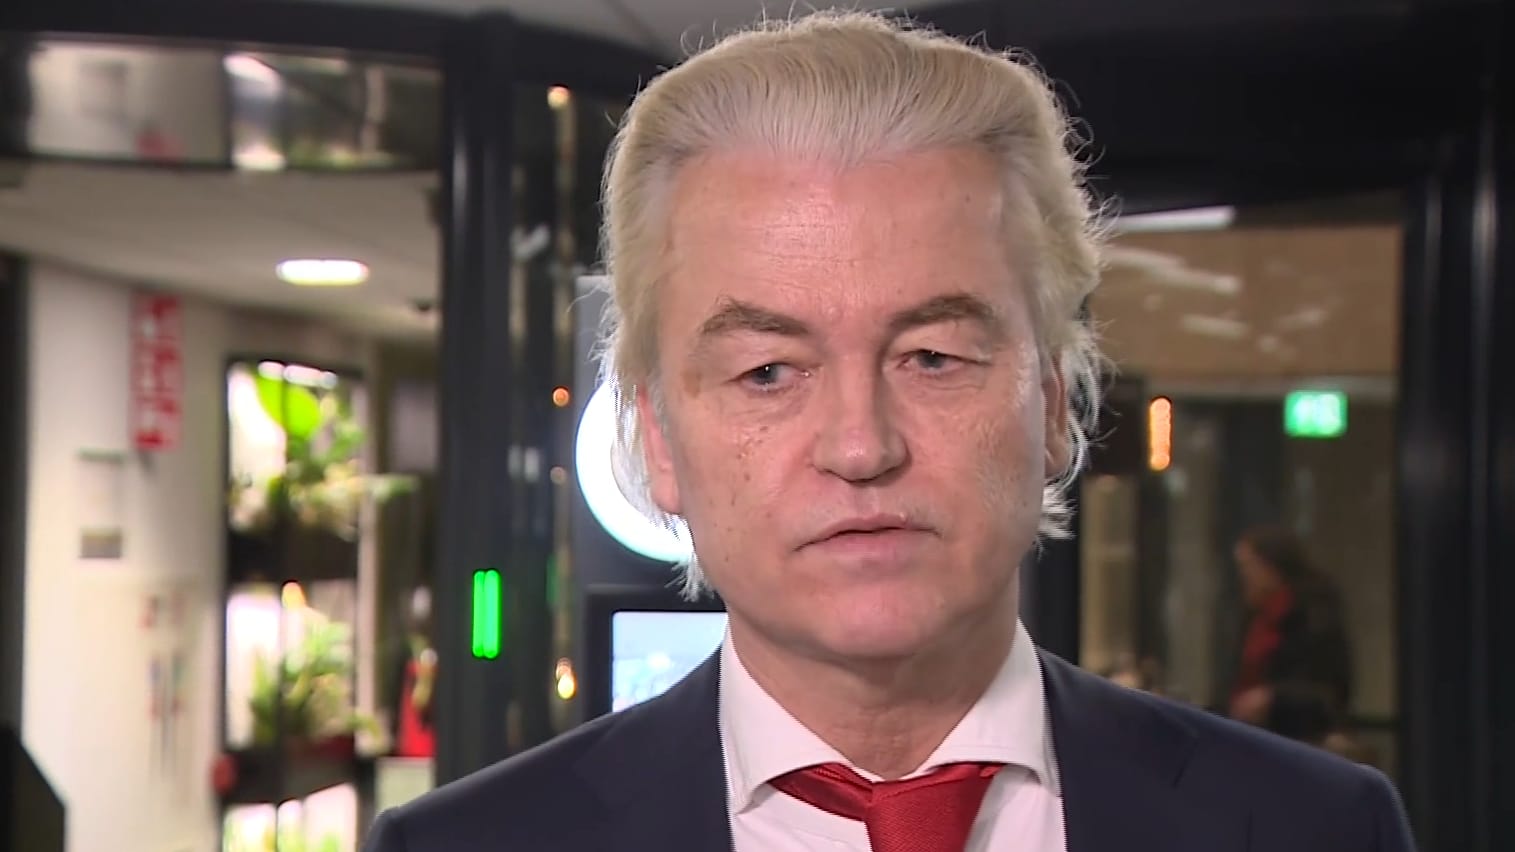 Wilders loopt weg na vraag over tweets: 'Ik draag altijd bij aan vertrouwen'